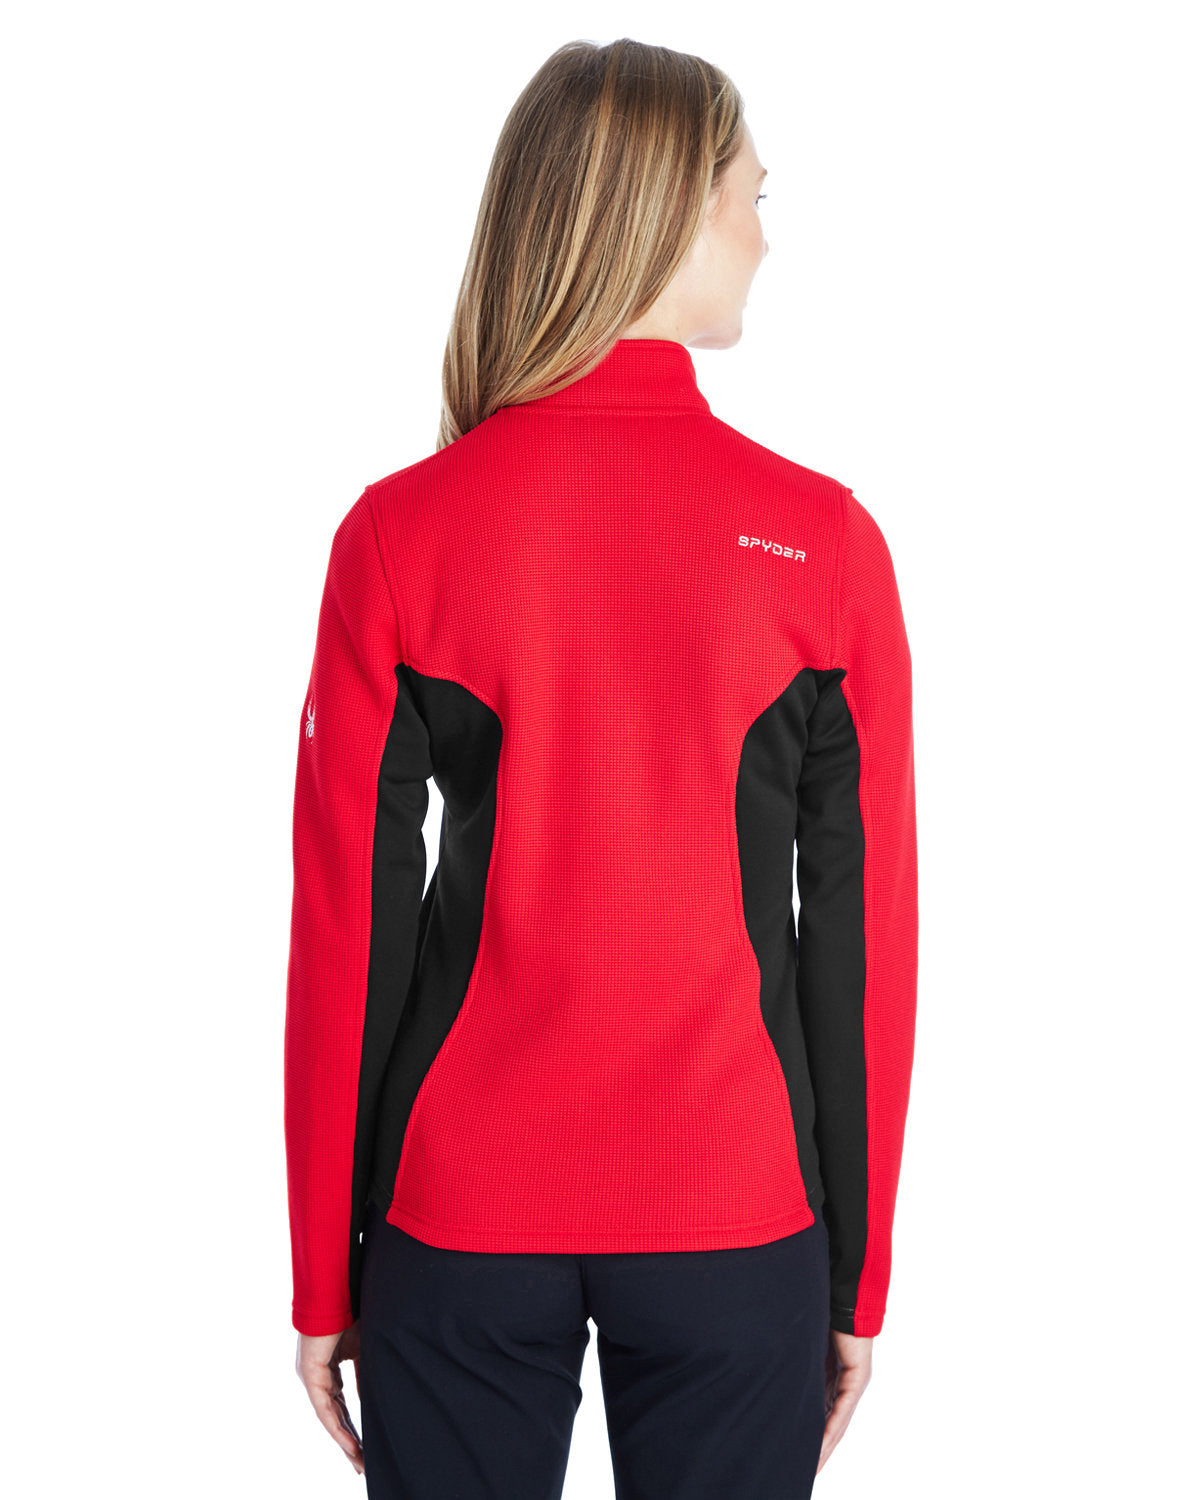 Spyder Men's Constant Full-Zip Sweater Fleece - Red/ Black/ Black - XL